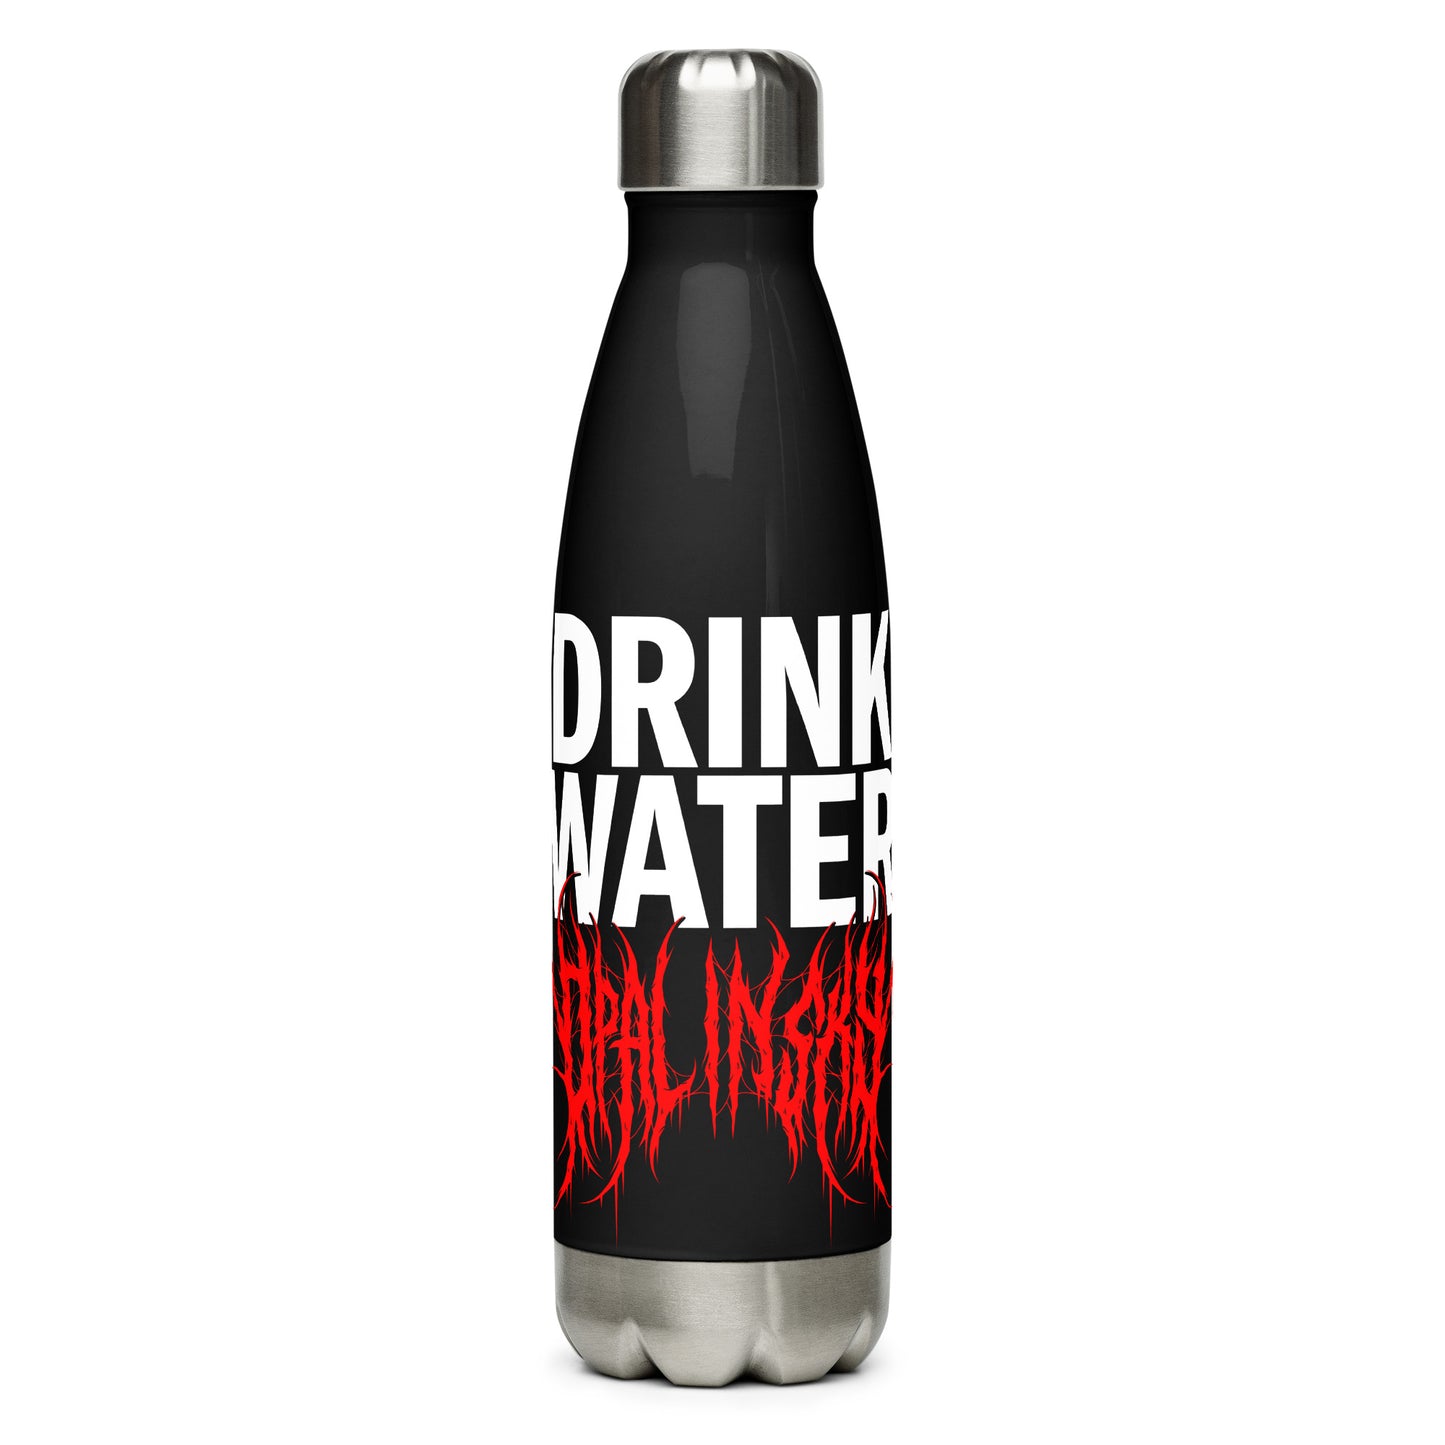 OPAL IN SKY "Drink Water" Stainless Steel Water Bottle